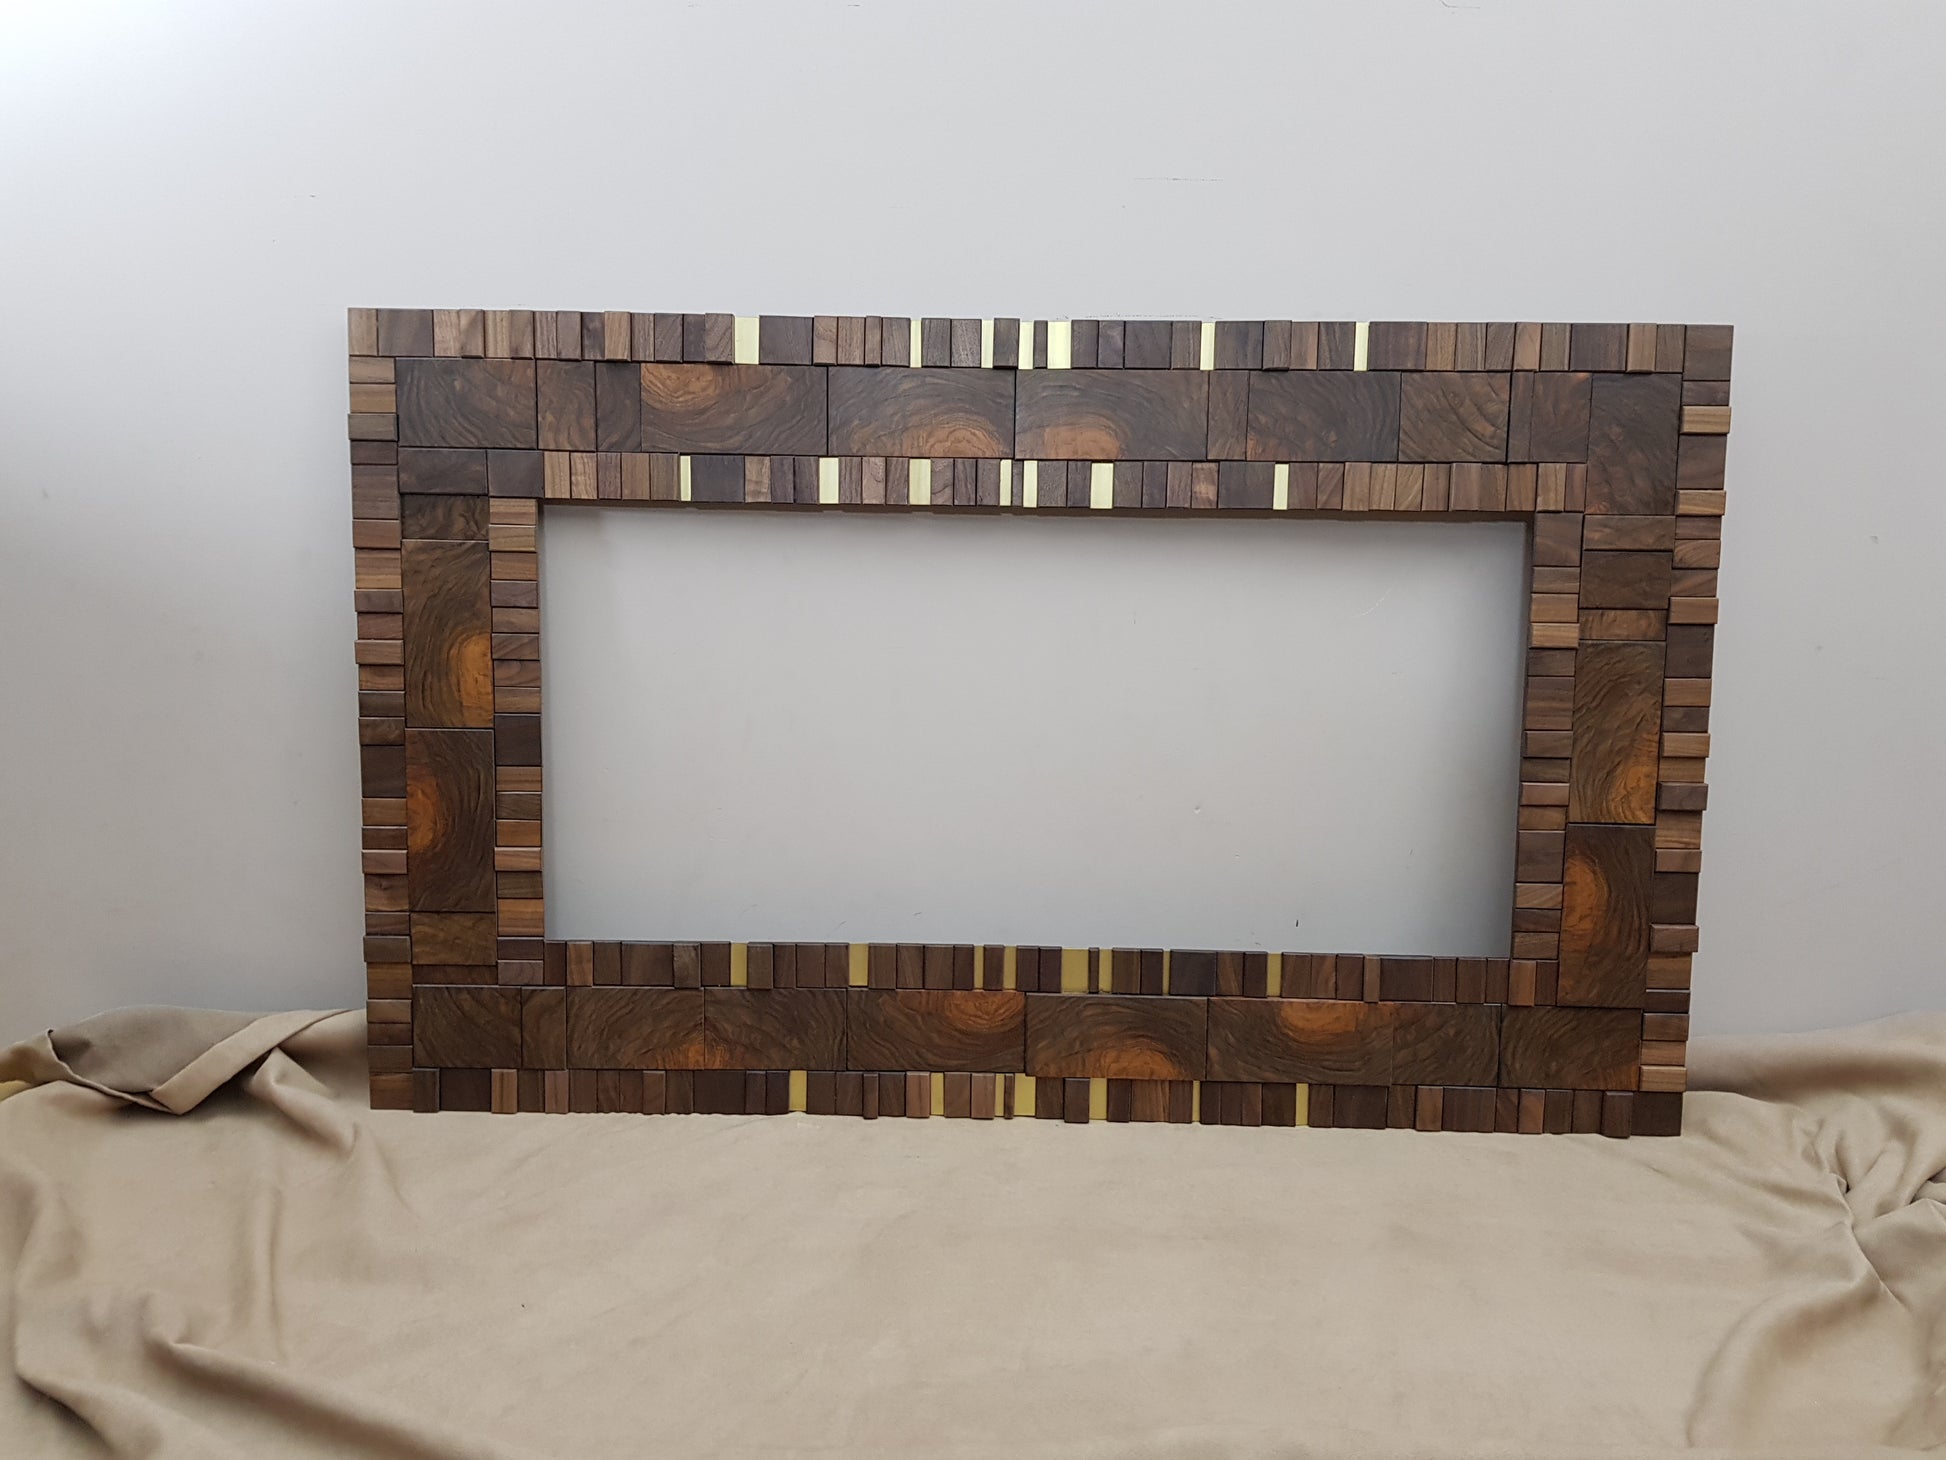 Handmade centrepiece statement mirror frame in end grain figured walnut and brass